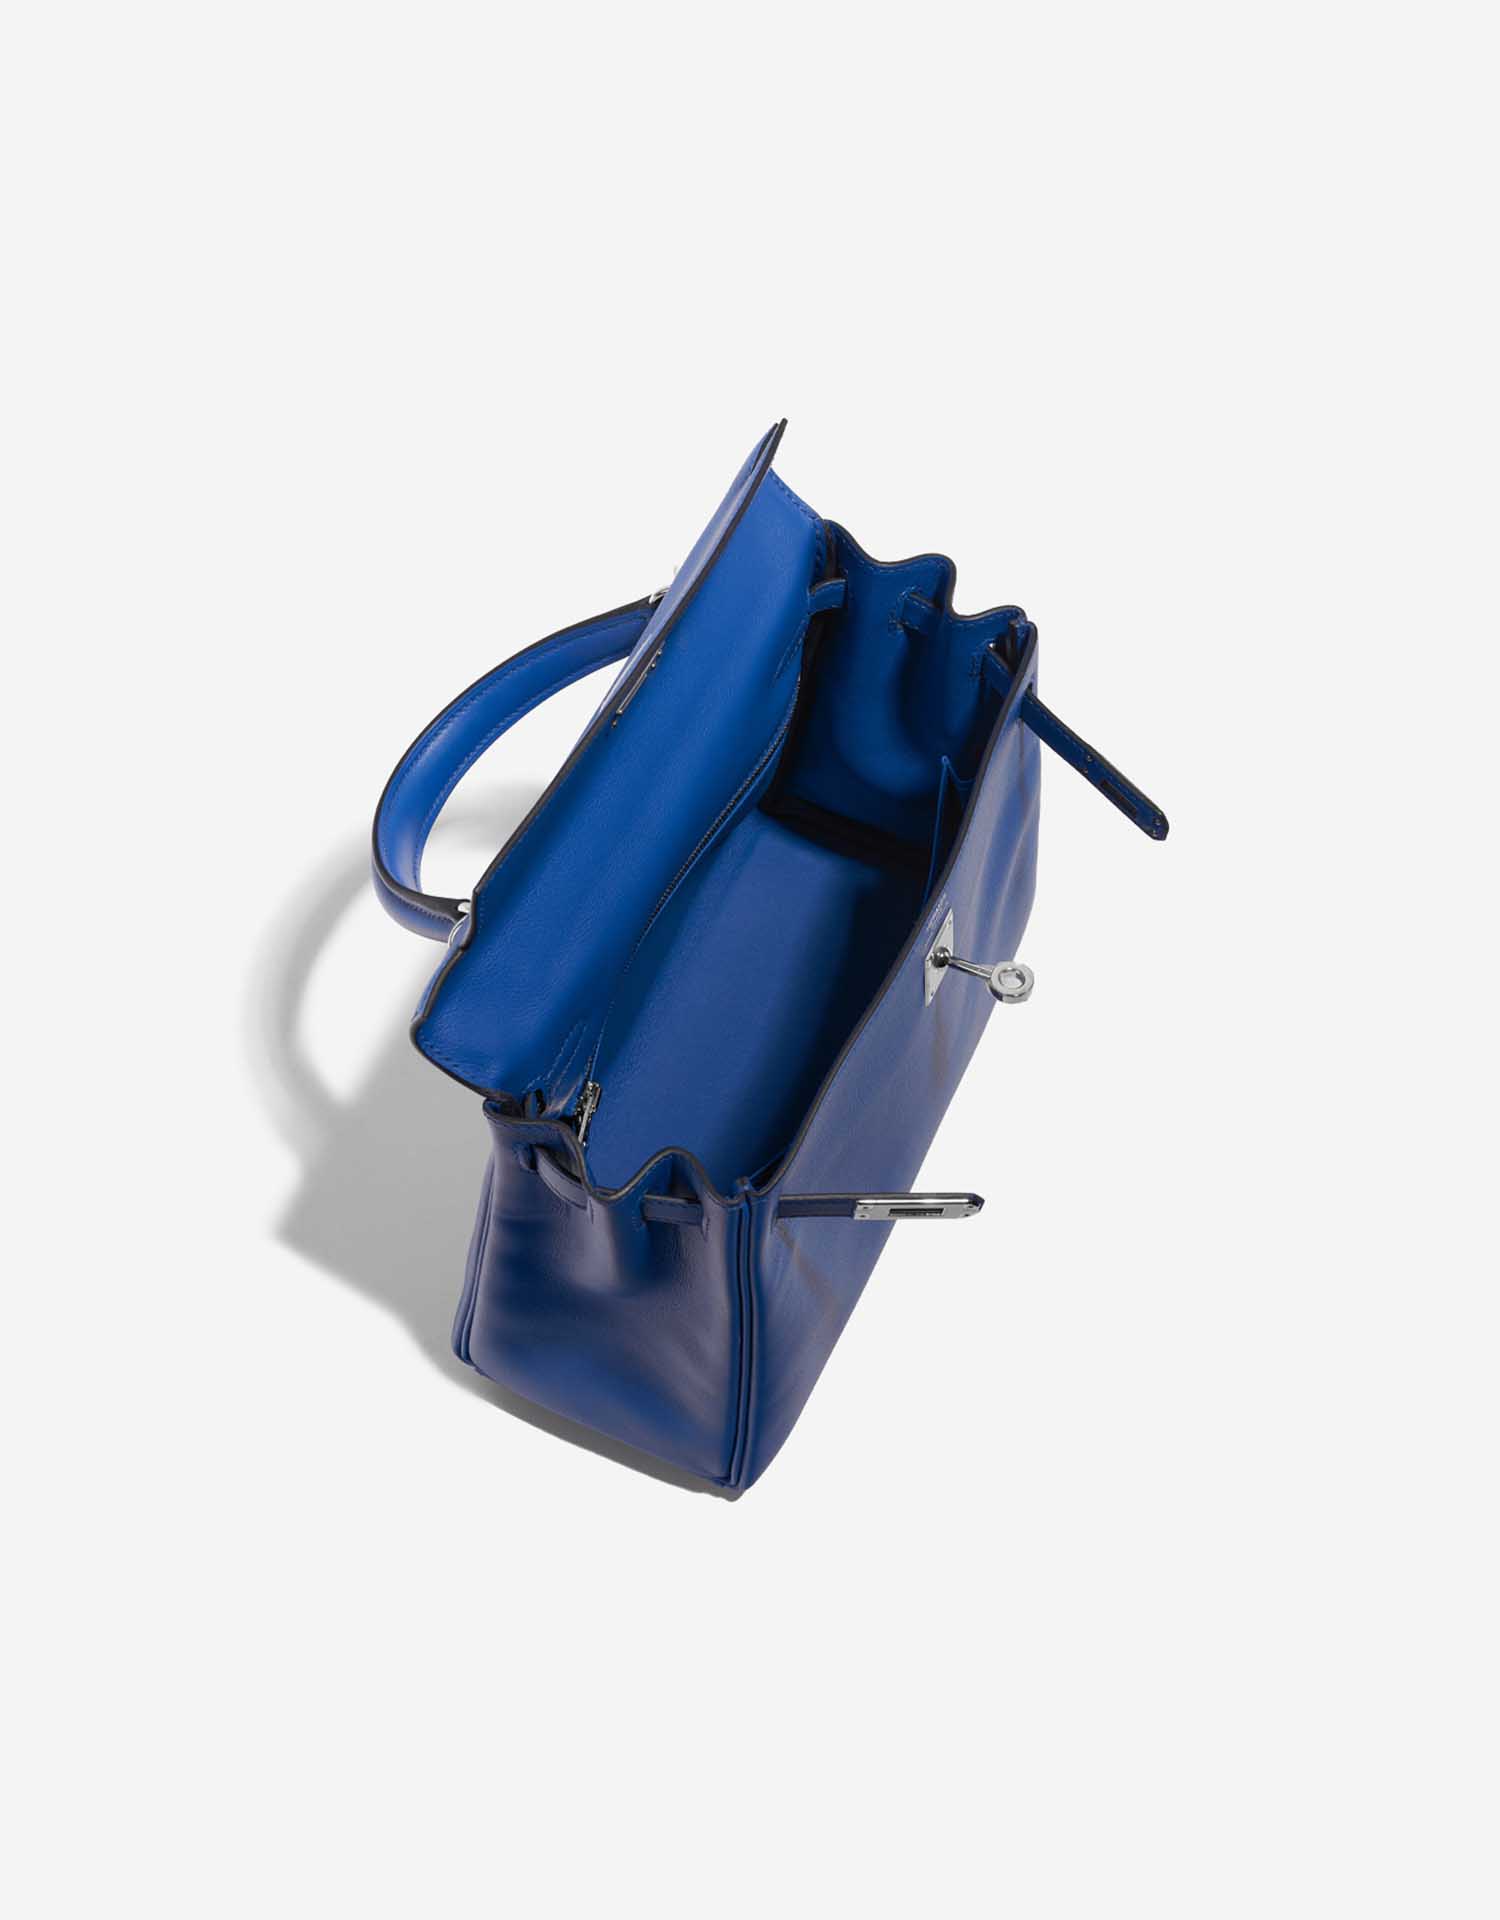 Pre-owned Hermès Tasche Kelly 25 Swift Blau Frankreich Blau Innenseite | Verkaufen Sie Ihre Designer-Tasche auf Saclab.com